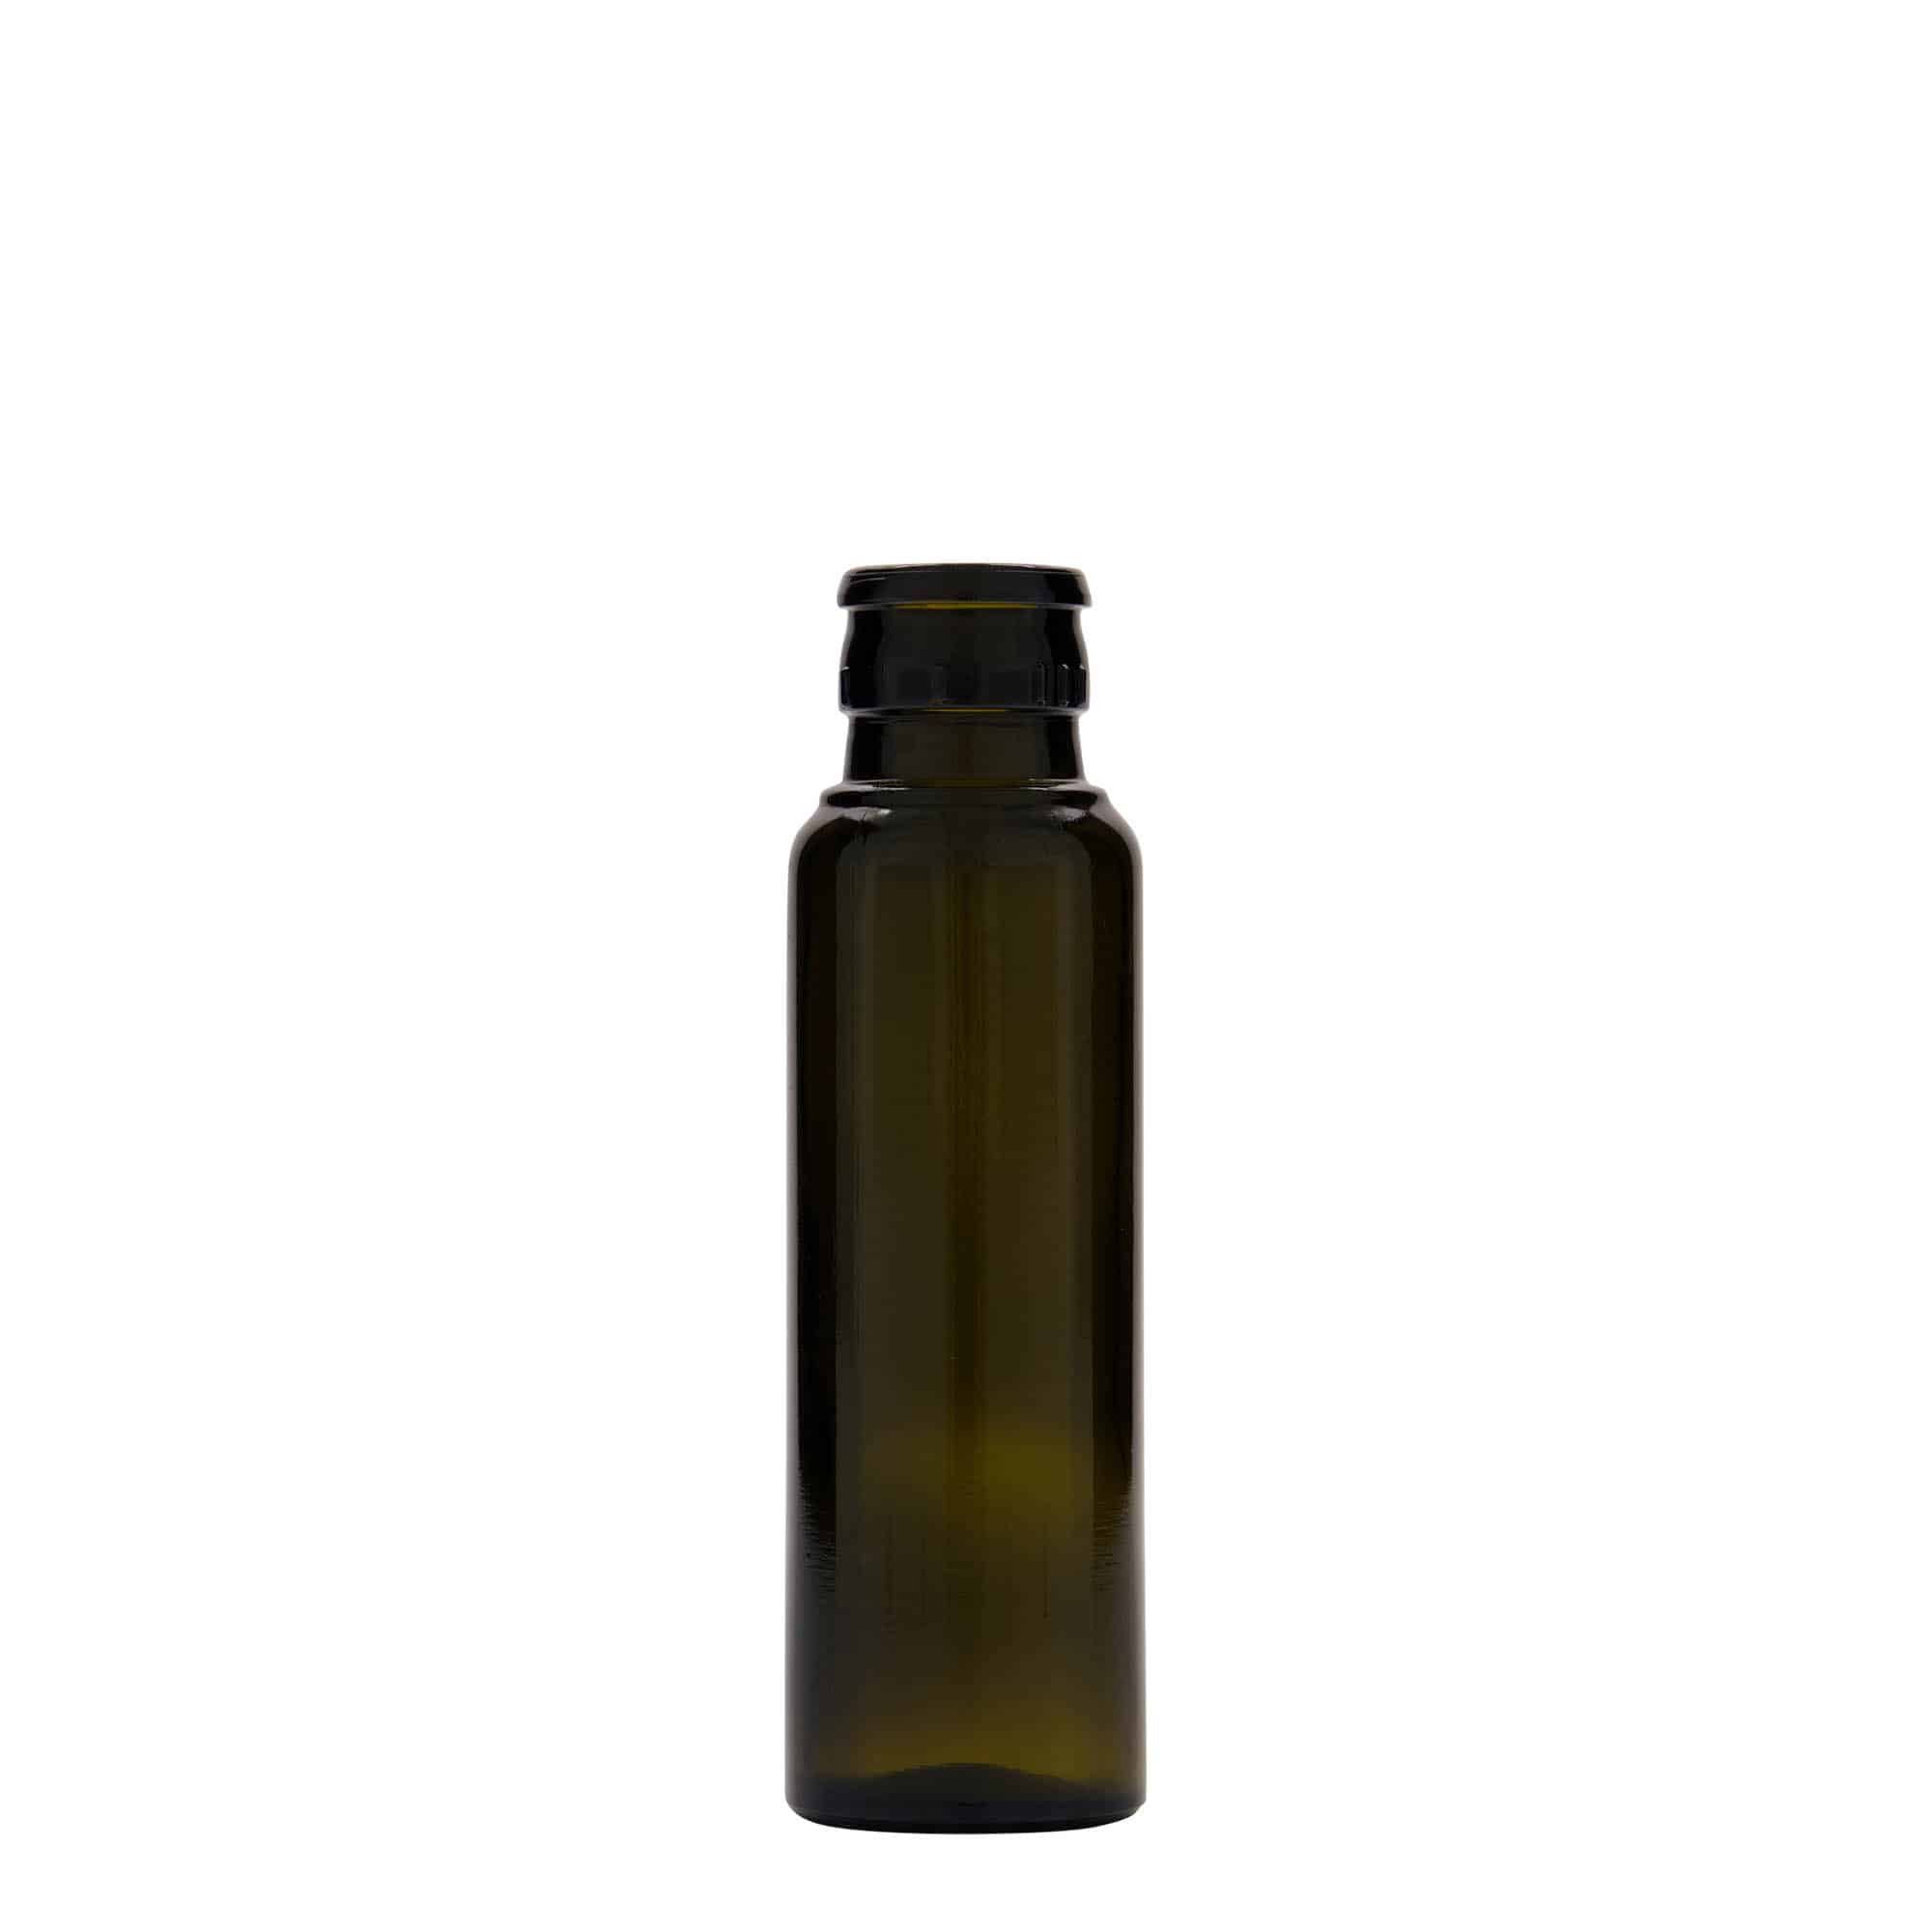 100 ml eddike-/olieflaske 'Willy New', glas, antikgrøn, åbning: DOP